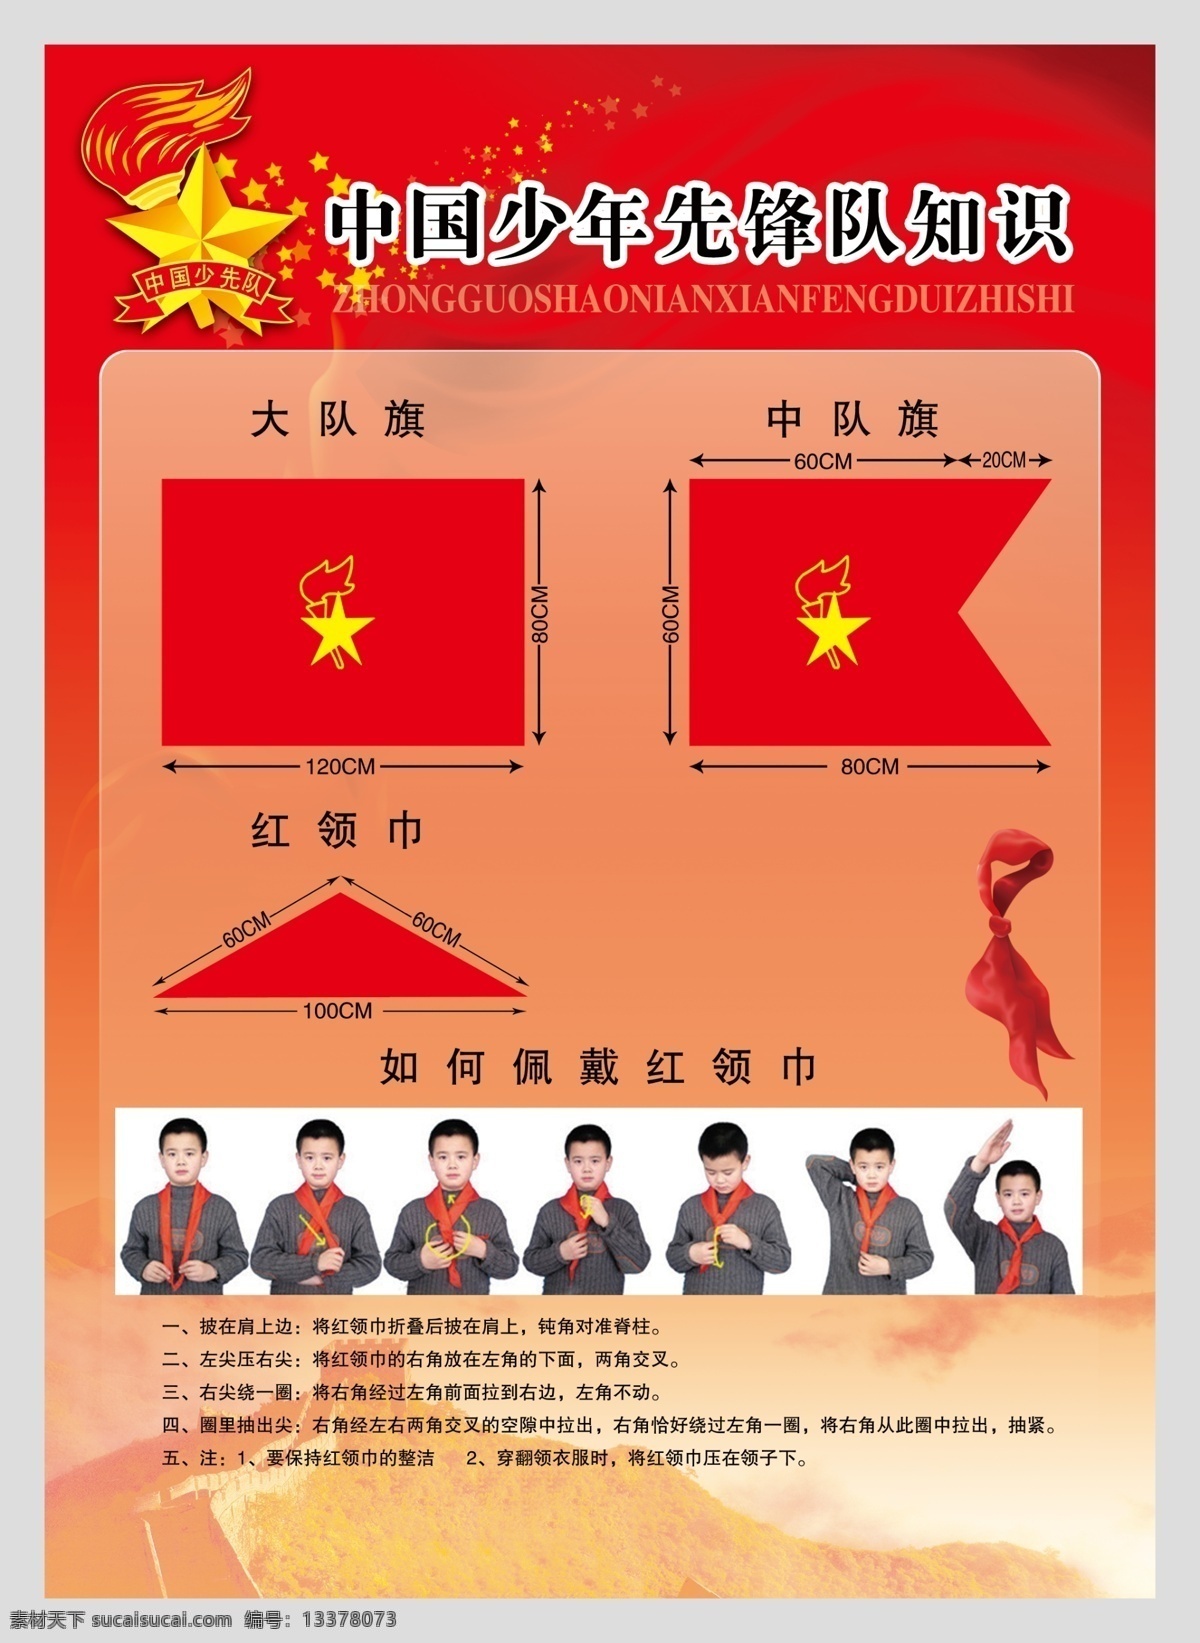 中国少年先锋队 知识 少先队 中国 少年 先锋队 队旗 红领巾 展板模板 广告设计模板 源文件